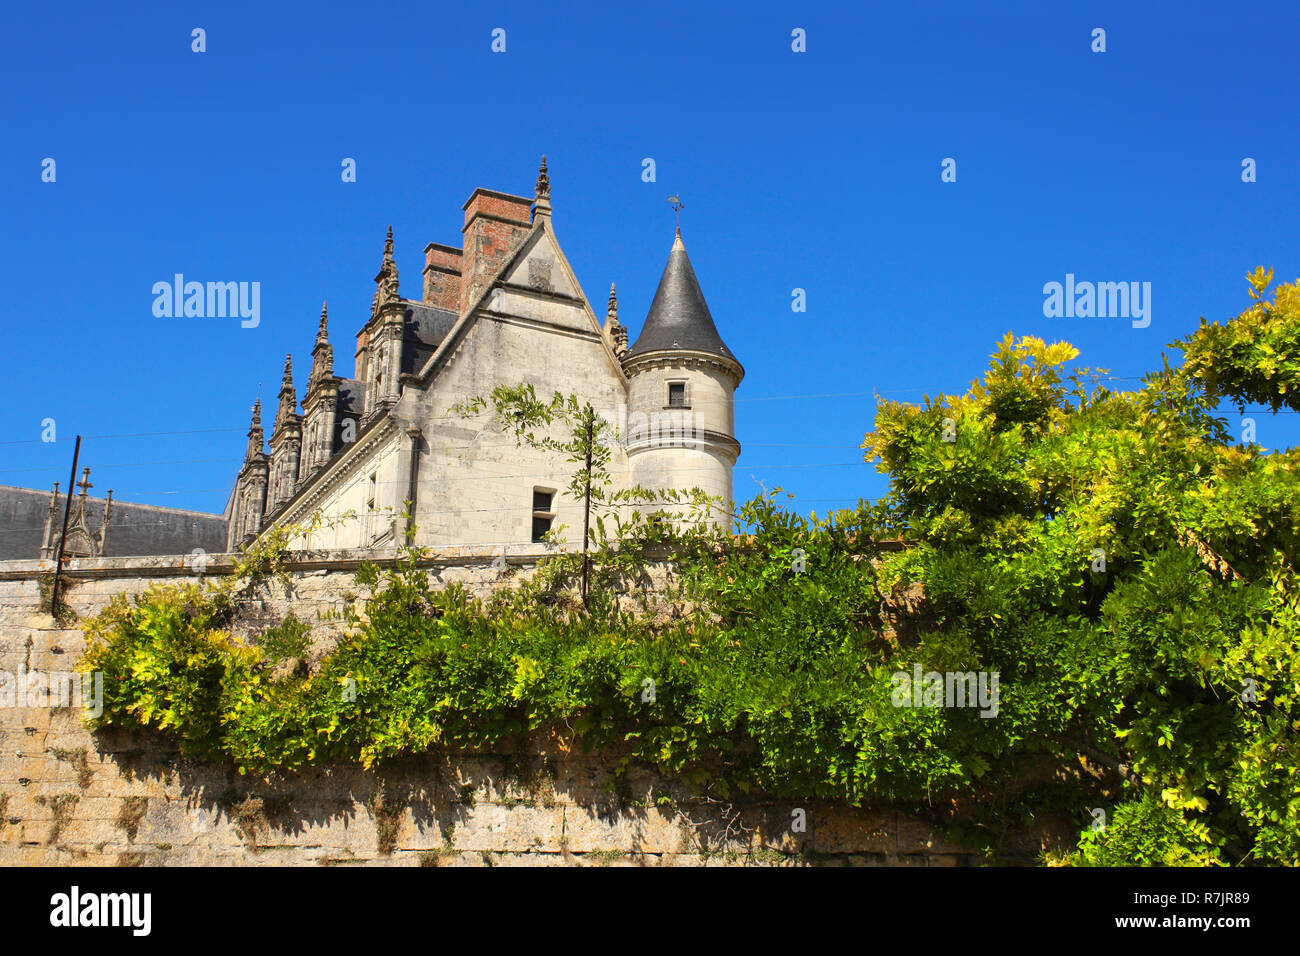 Chateau de Amboise medieval castle, Loire Valley, France. UNESCO World Heritage site Stock Photo